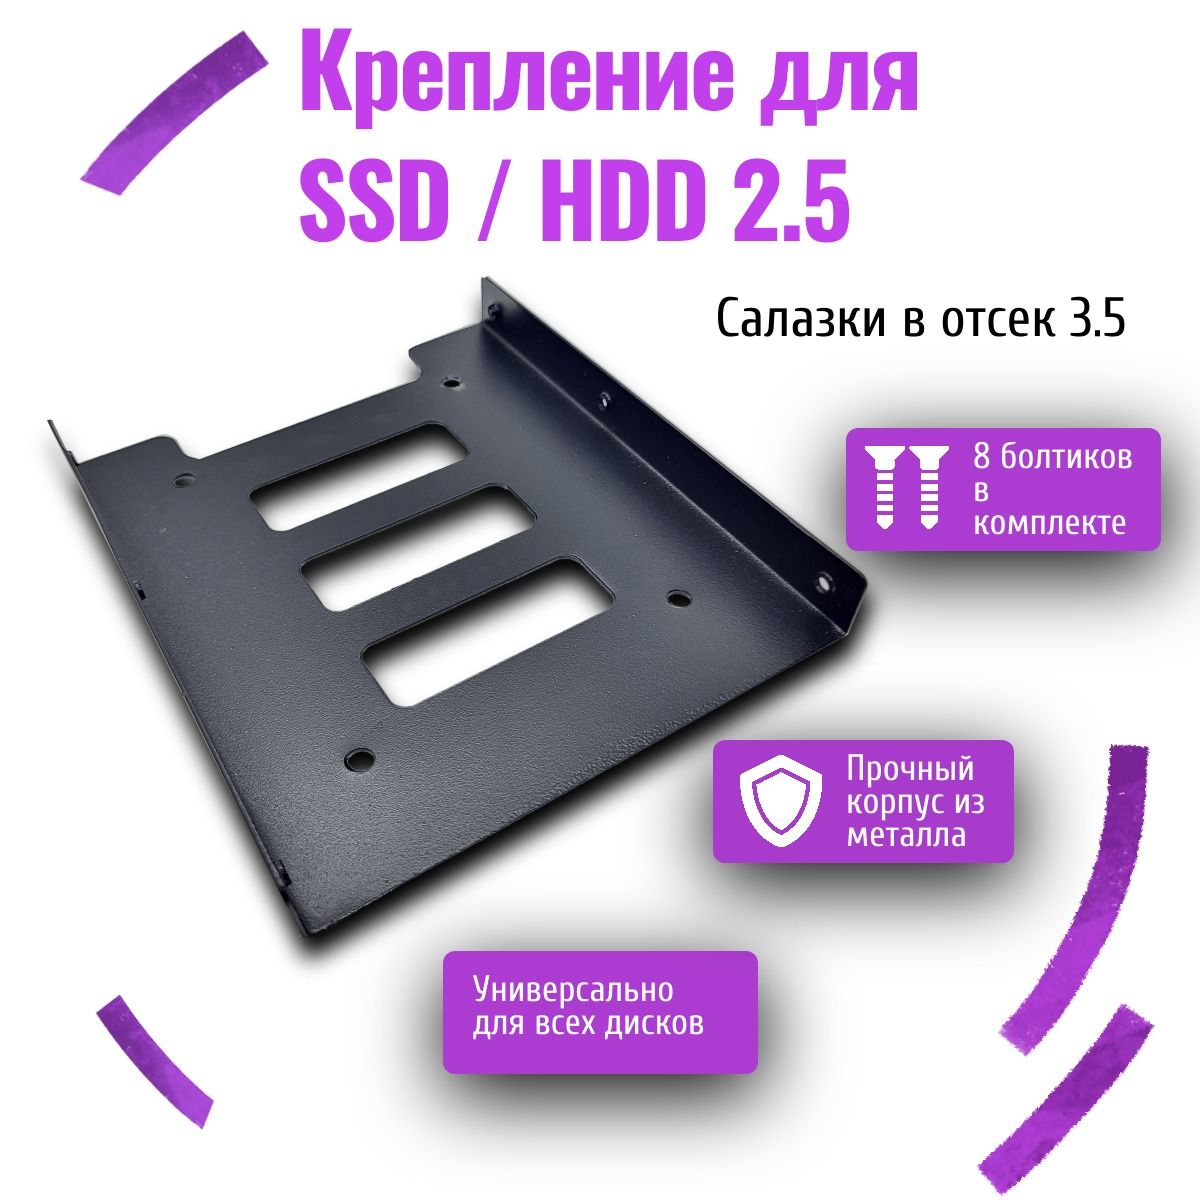 КреплениедляSSD/HDD2.5"вотсек3.5"(салазки)адаптердляSSD/HDD2.5"вотсек3.5"(салазки)корпусдляссд